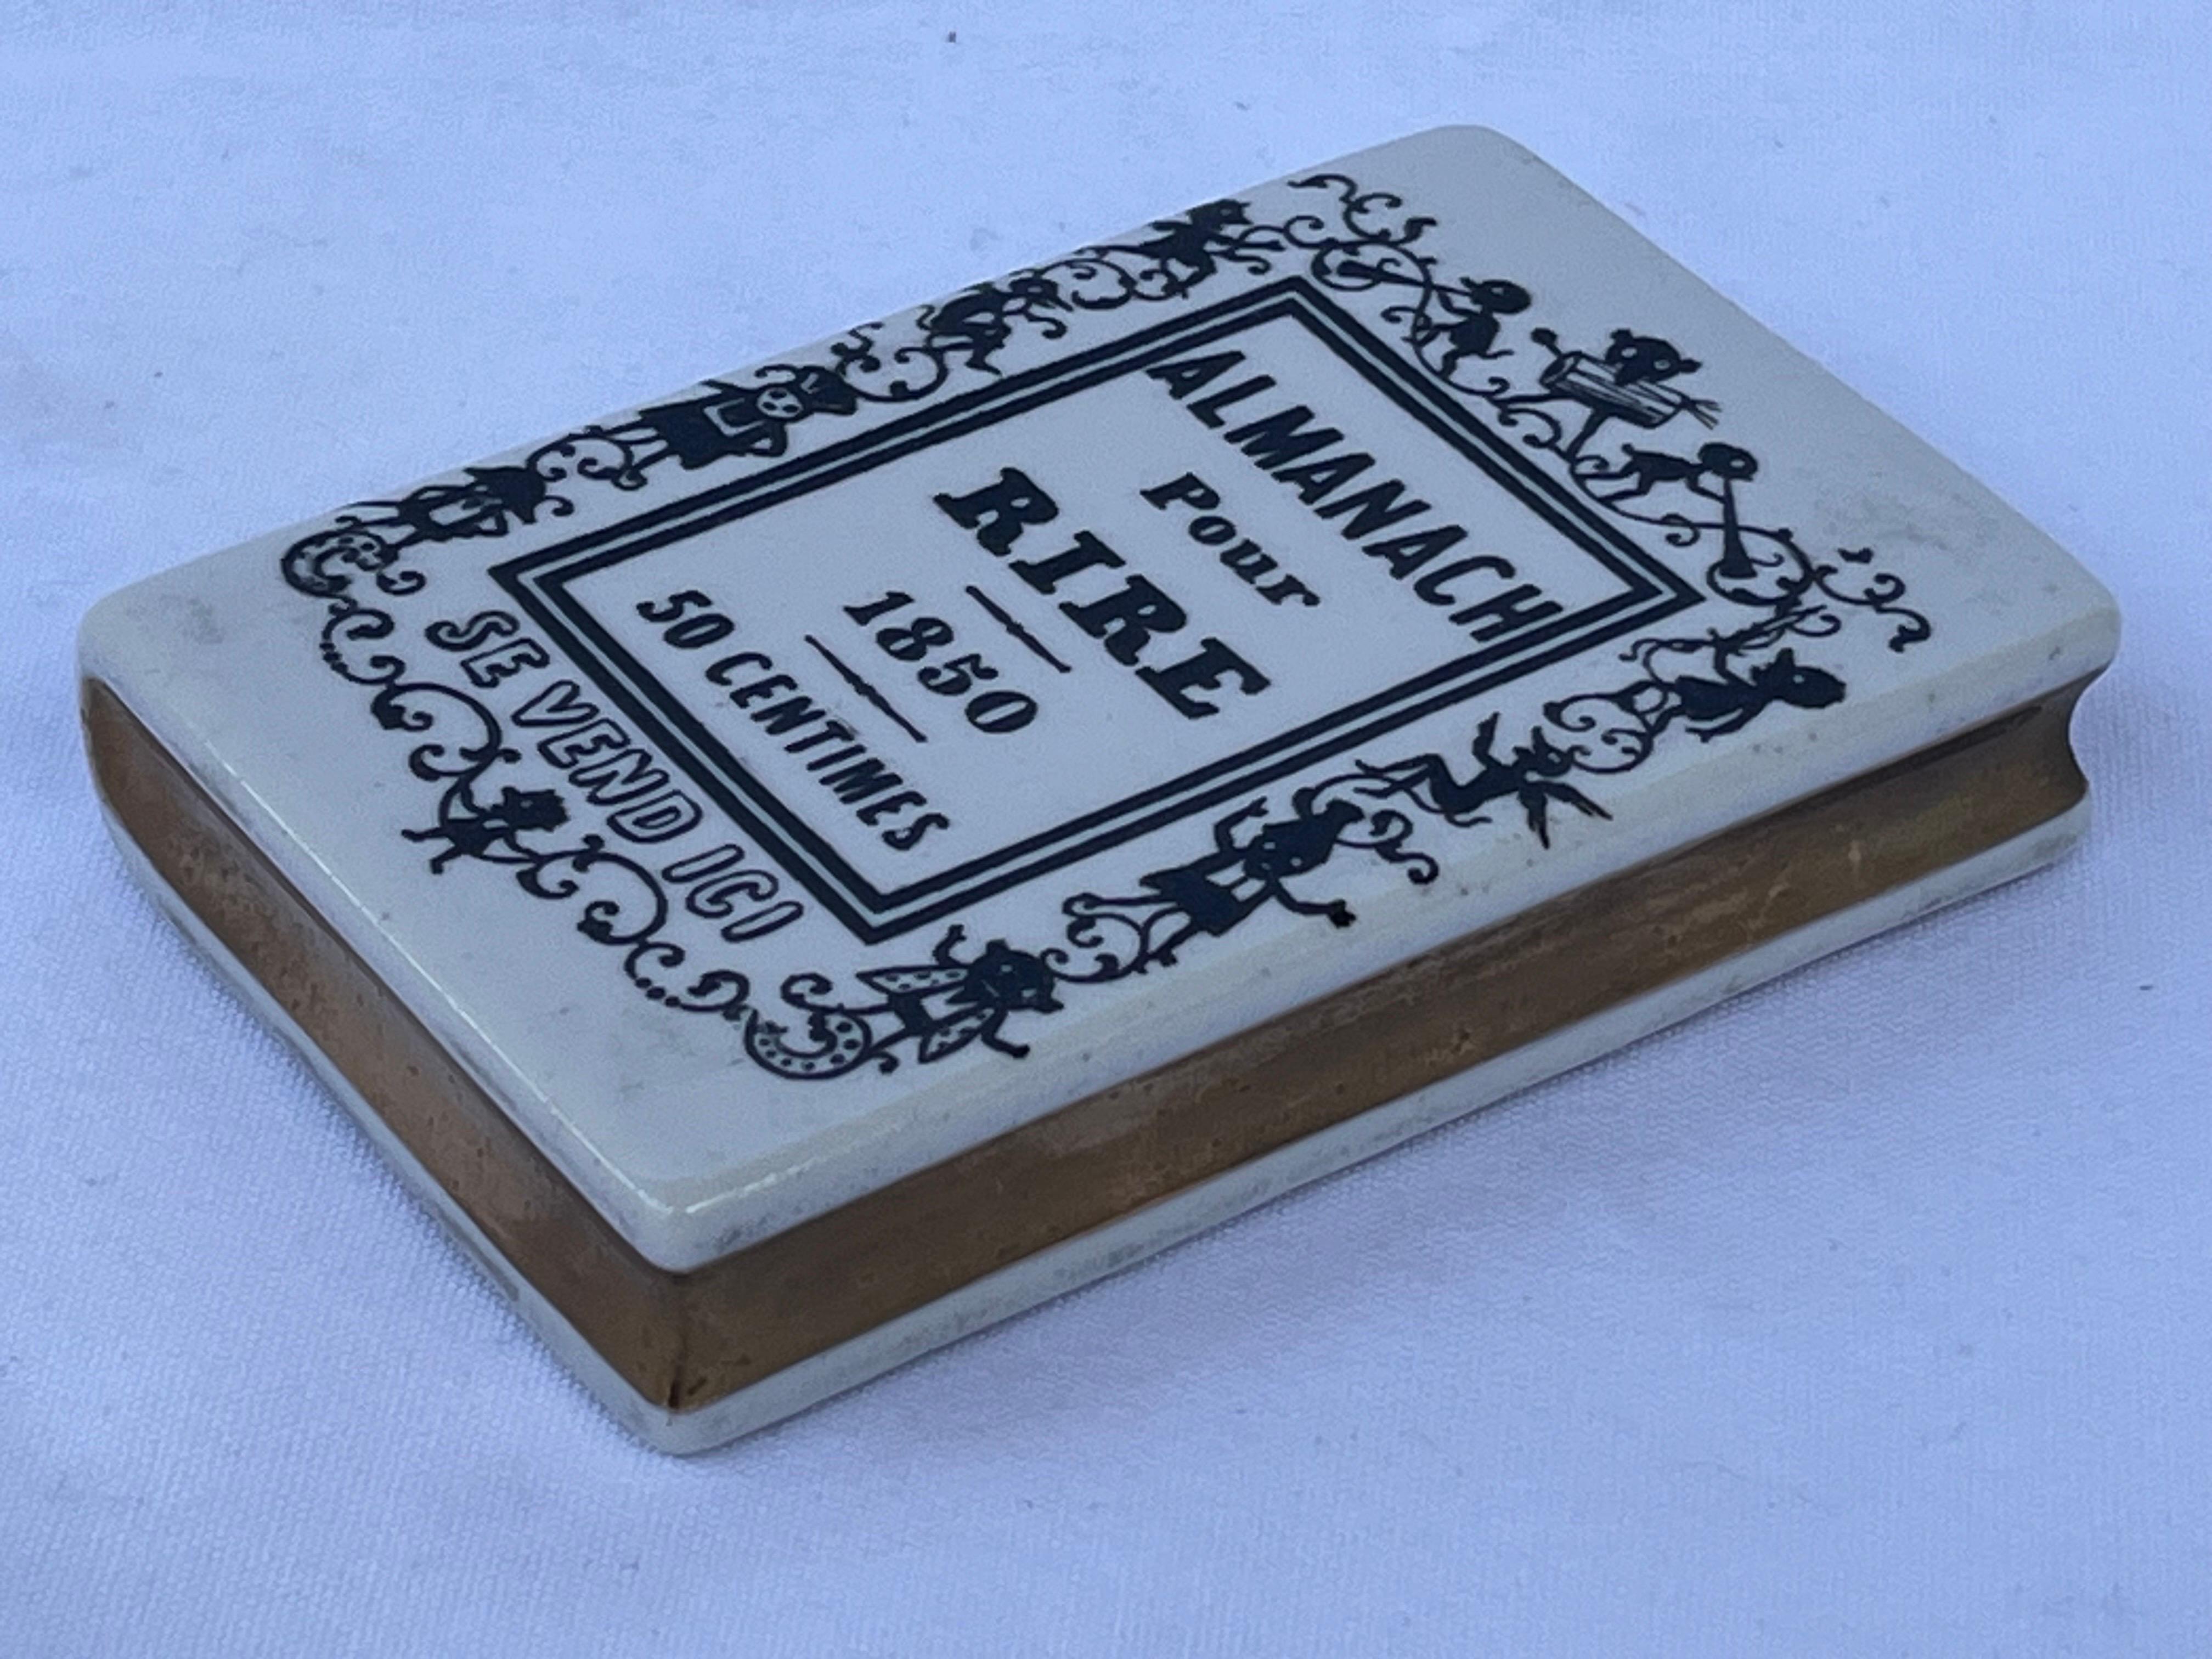 20th Century Fornasetti Almanach Pour Rire Faux Book Ceramic Paperweight Desk Accessory